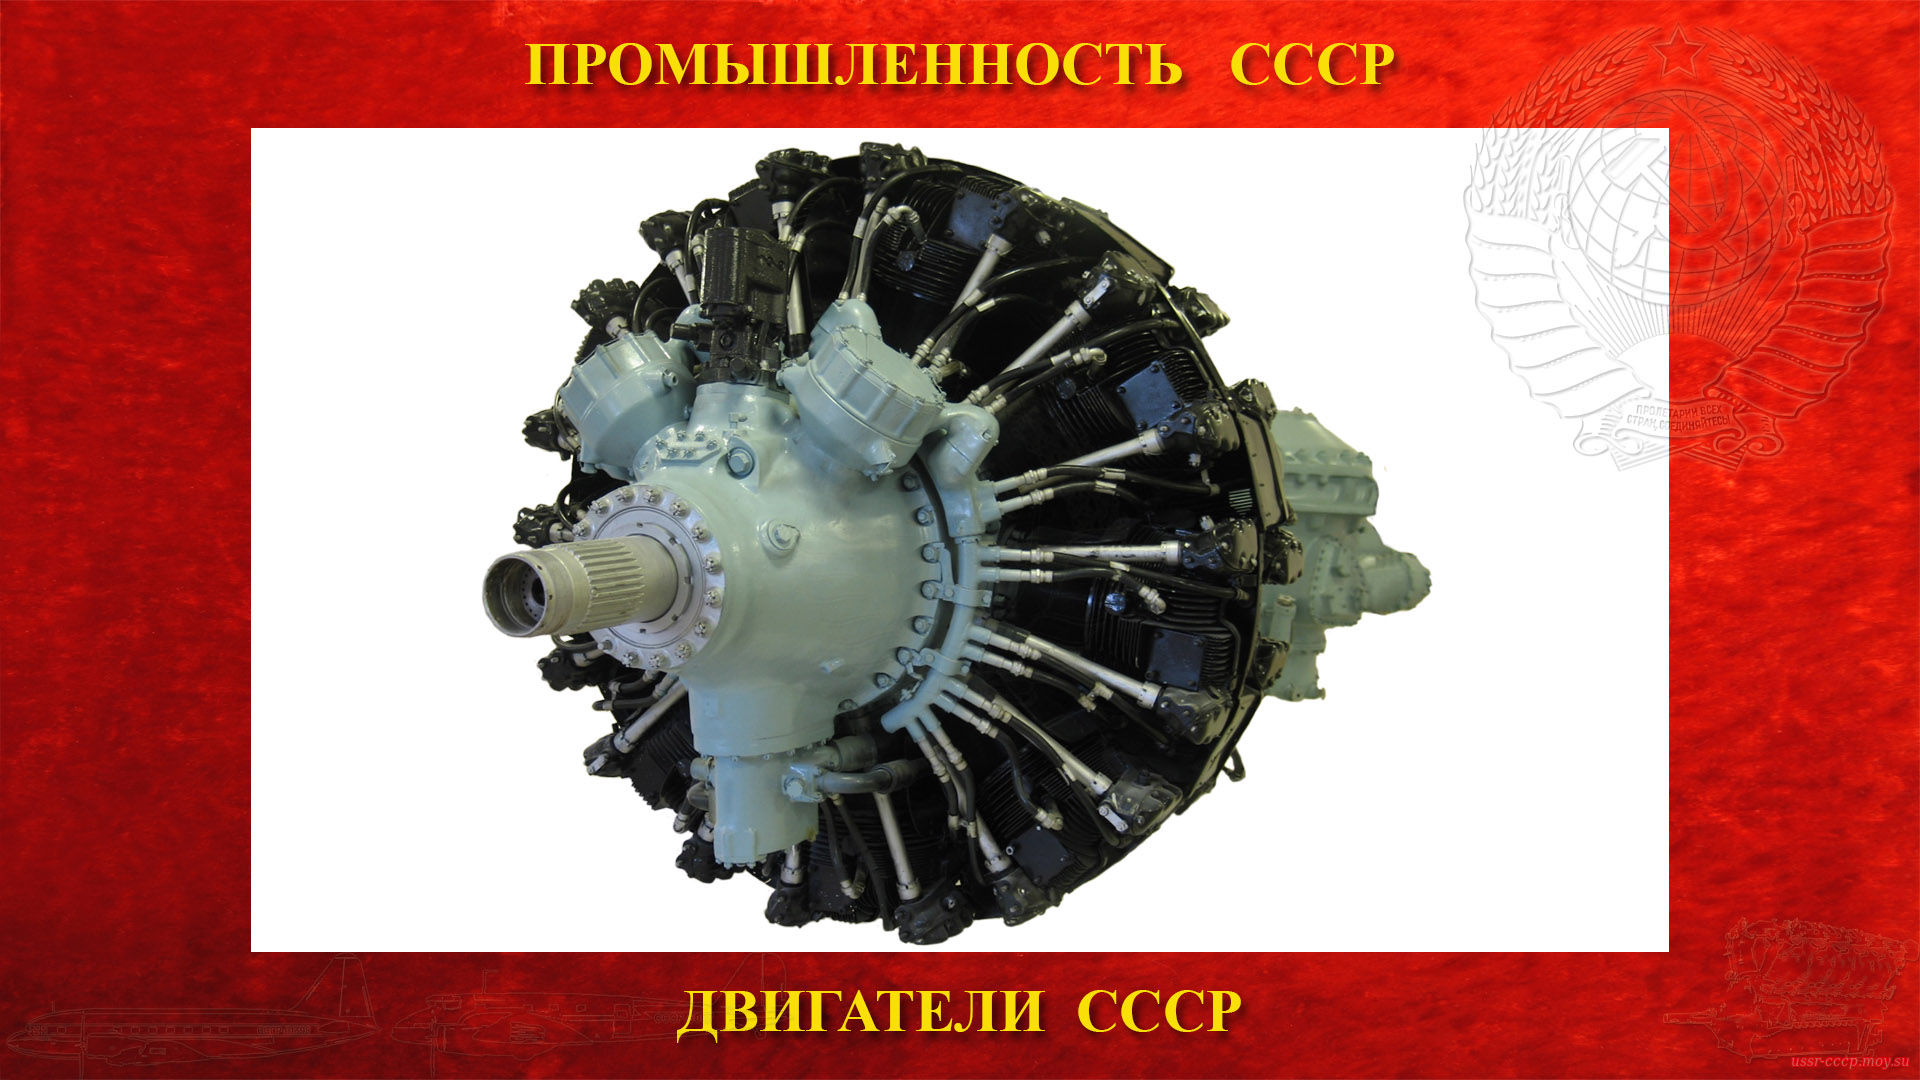 АШ-73 — Советский авиационный поршневой двигатель СССР